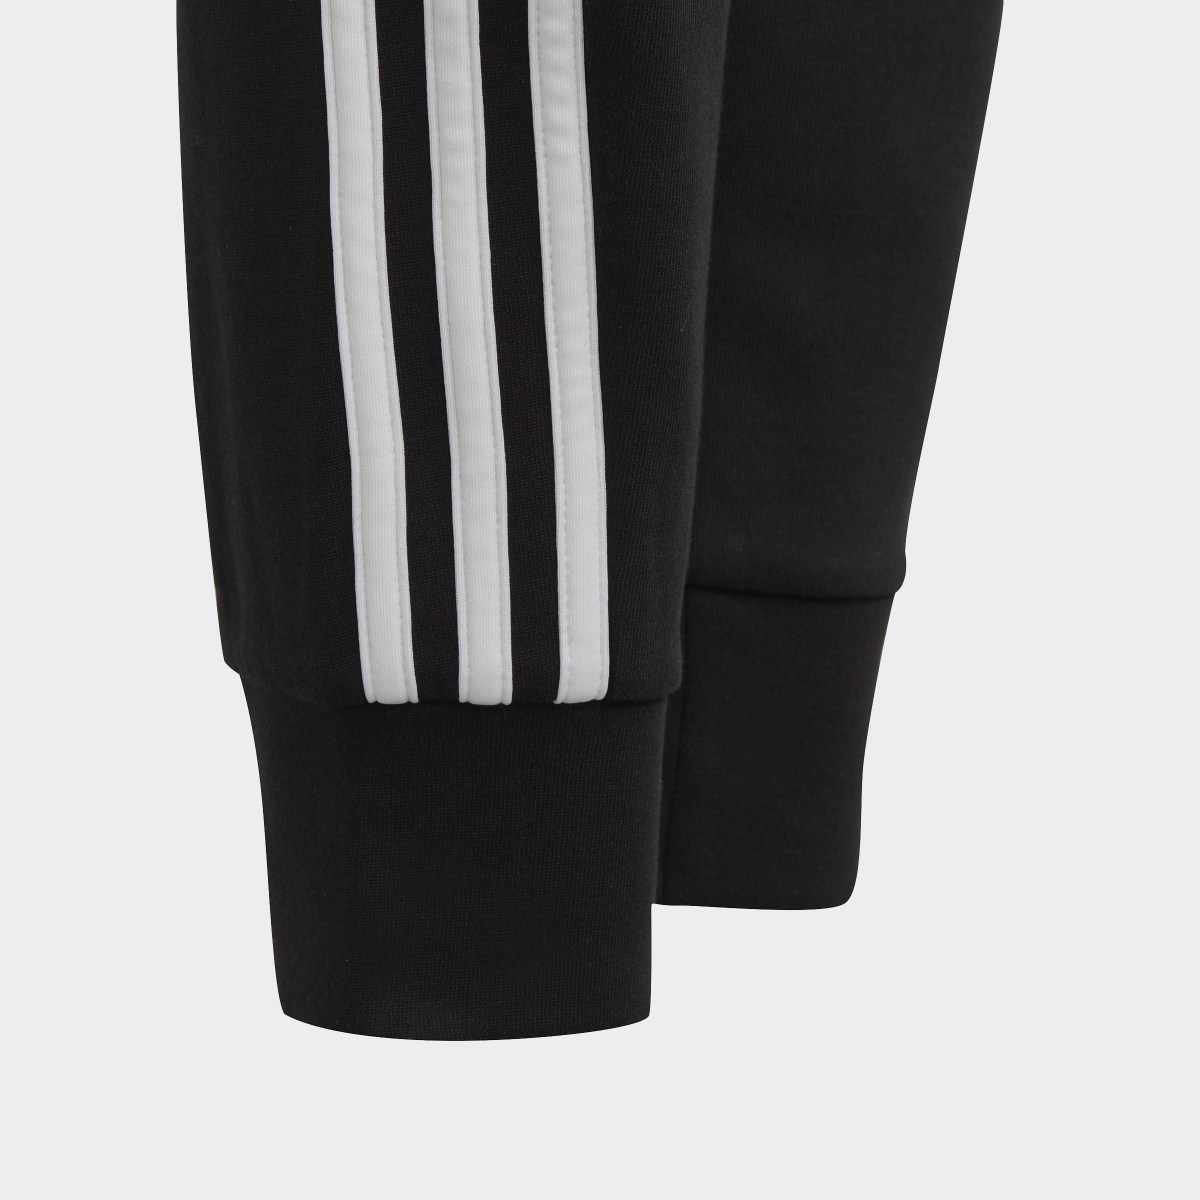 Adidas Future Icons 3-Stripes Cotton Eşofman Altı. 5